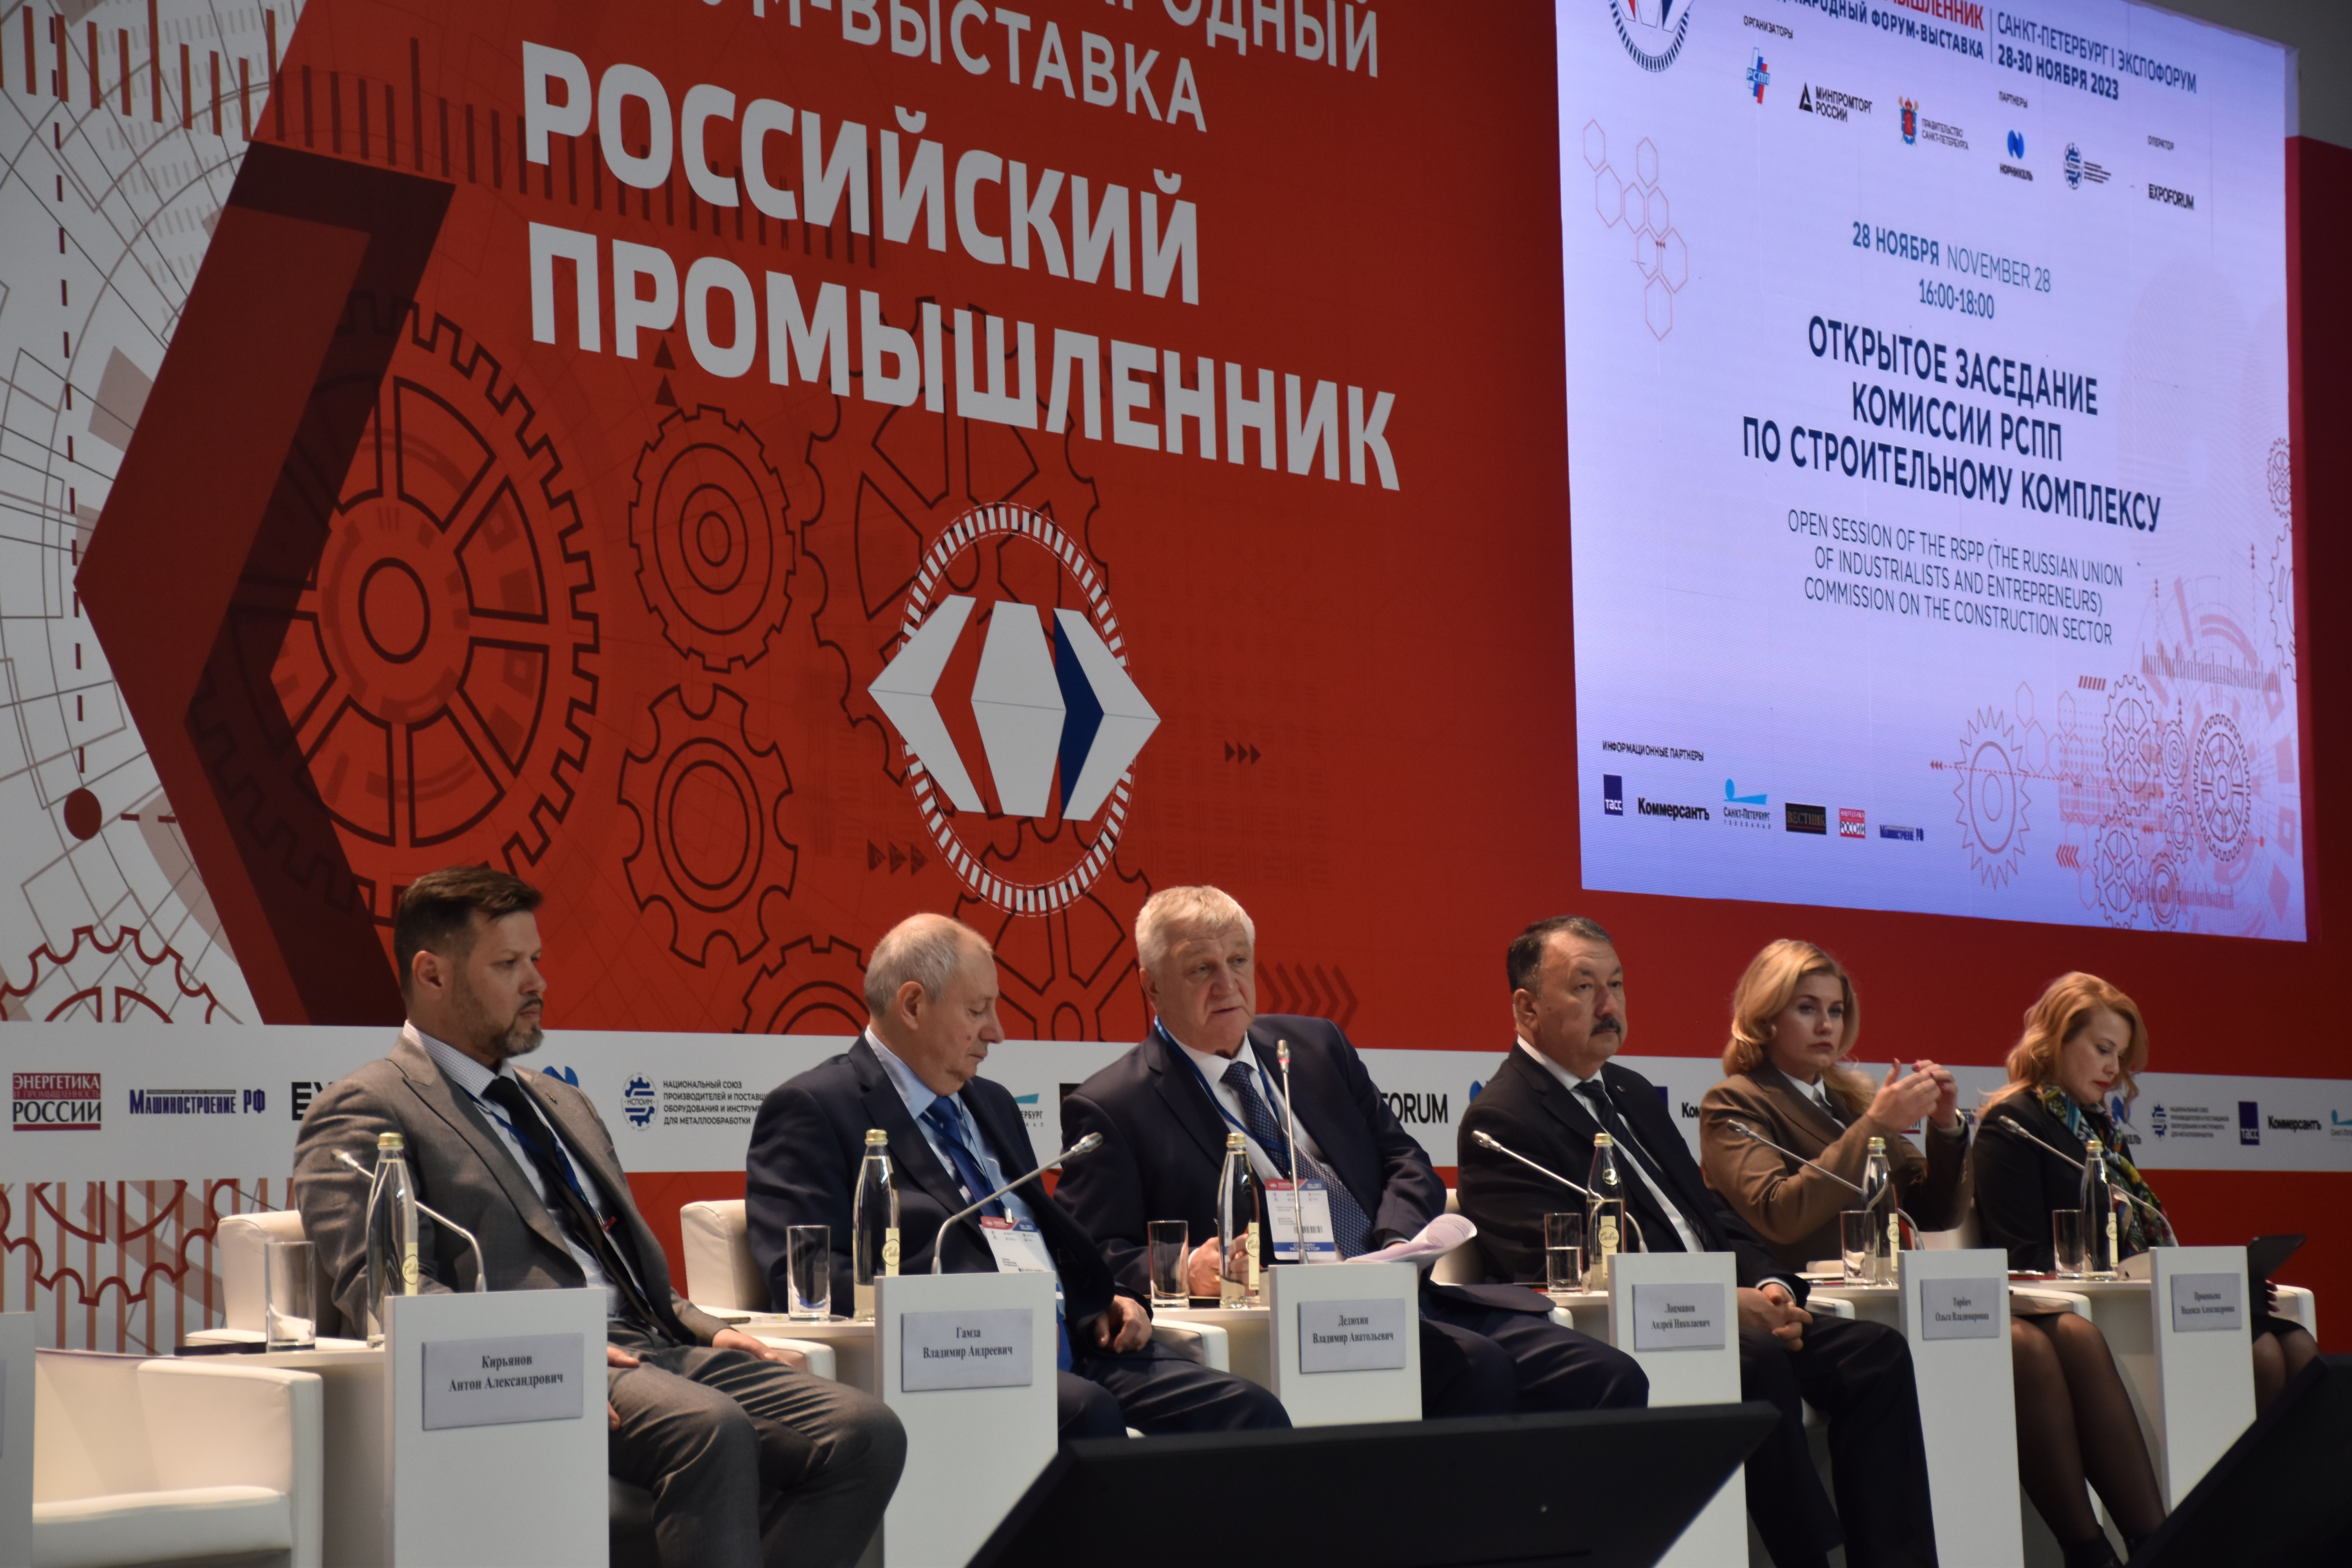 В Санкт-Петербурге состоялось заседание Комиссии РСПП по строительному комплексу на тему «Роль строительного комплекса в реализации проектов технологического развития России